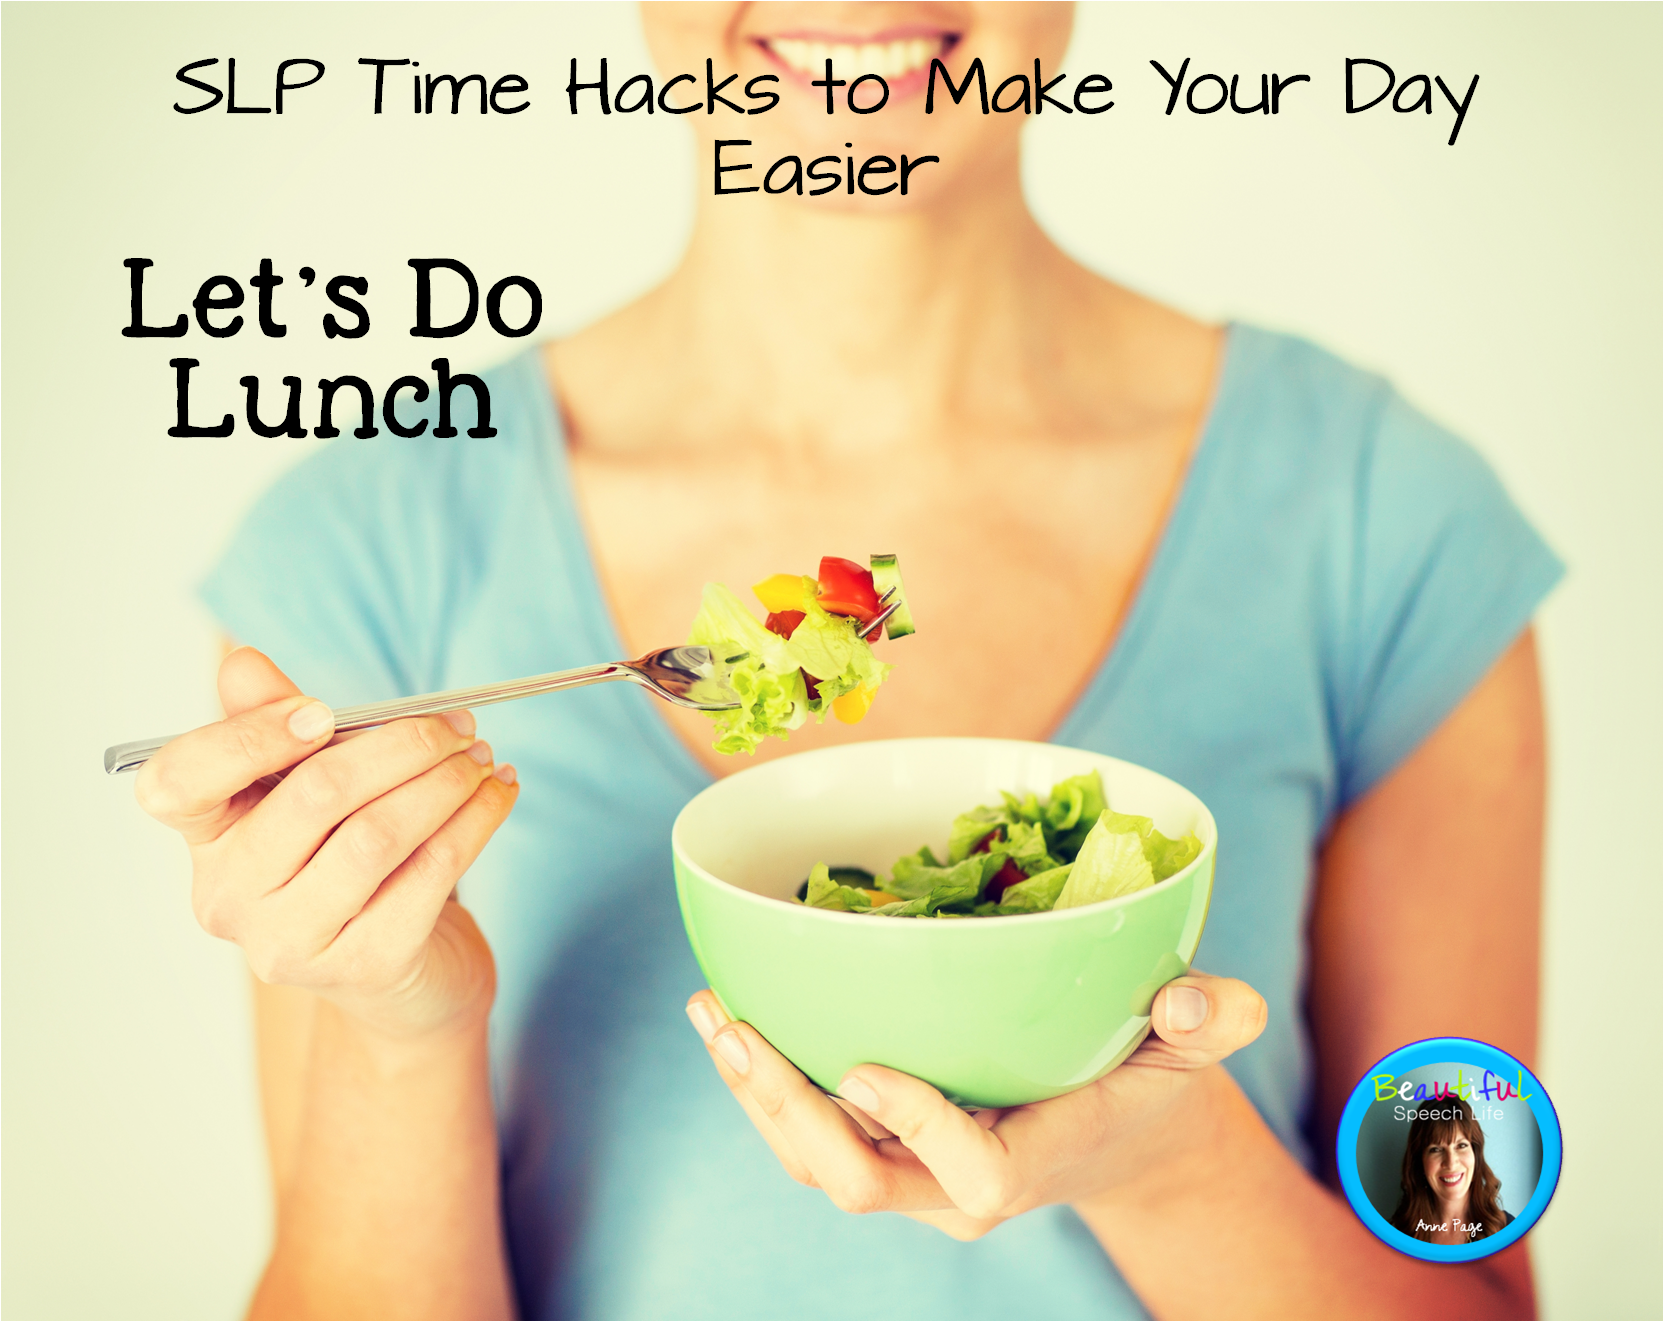 SLP Time Hacks Let's Do Lunch